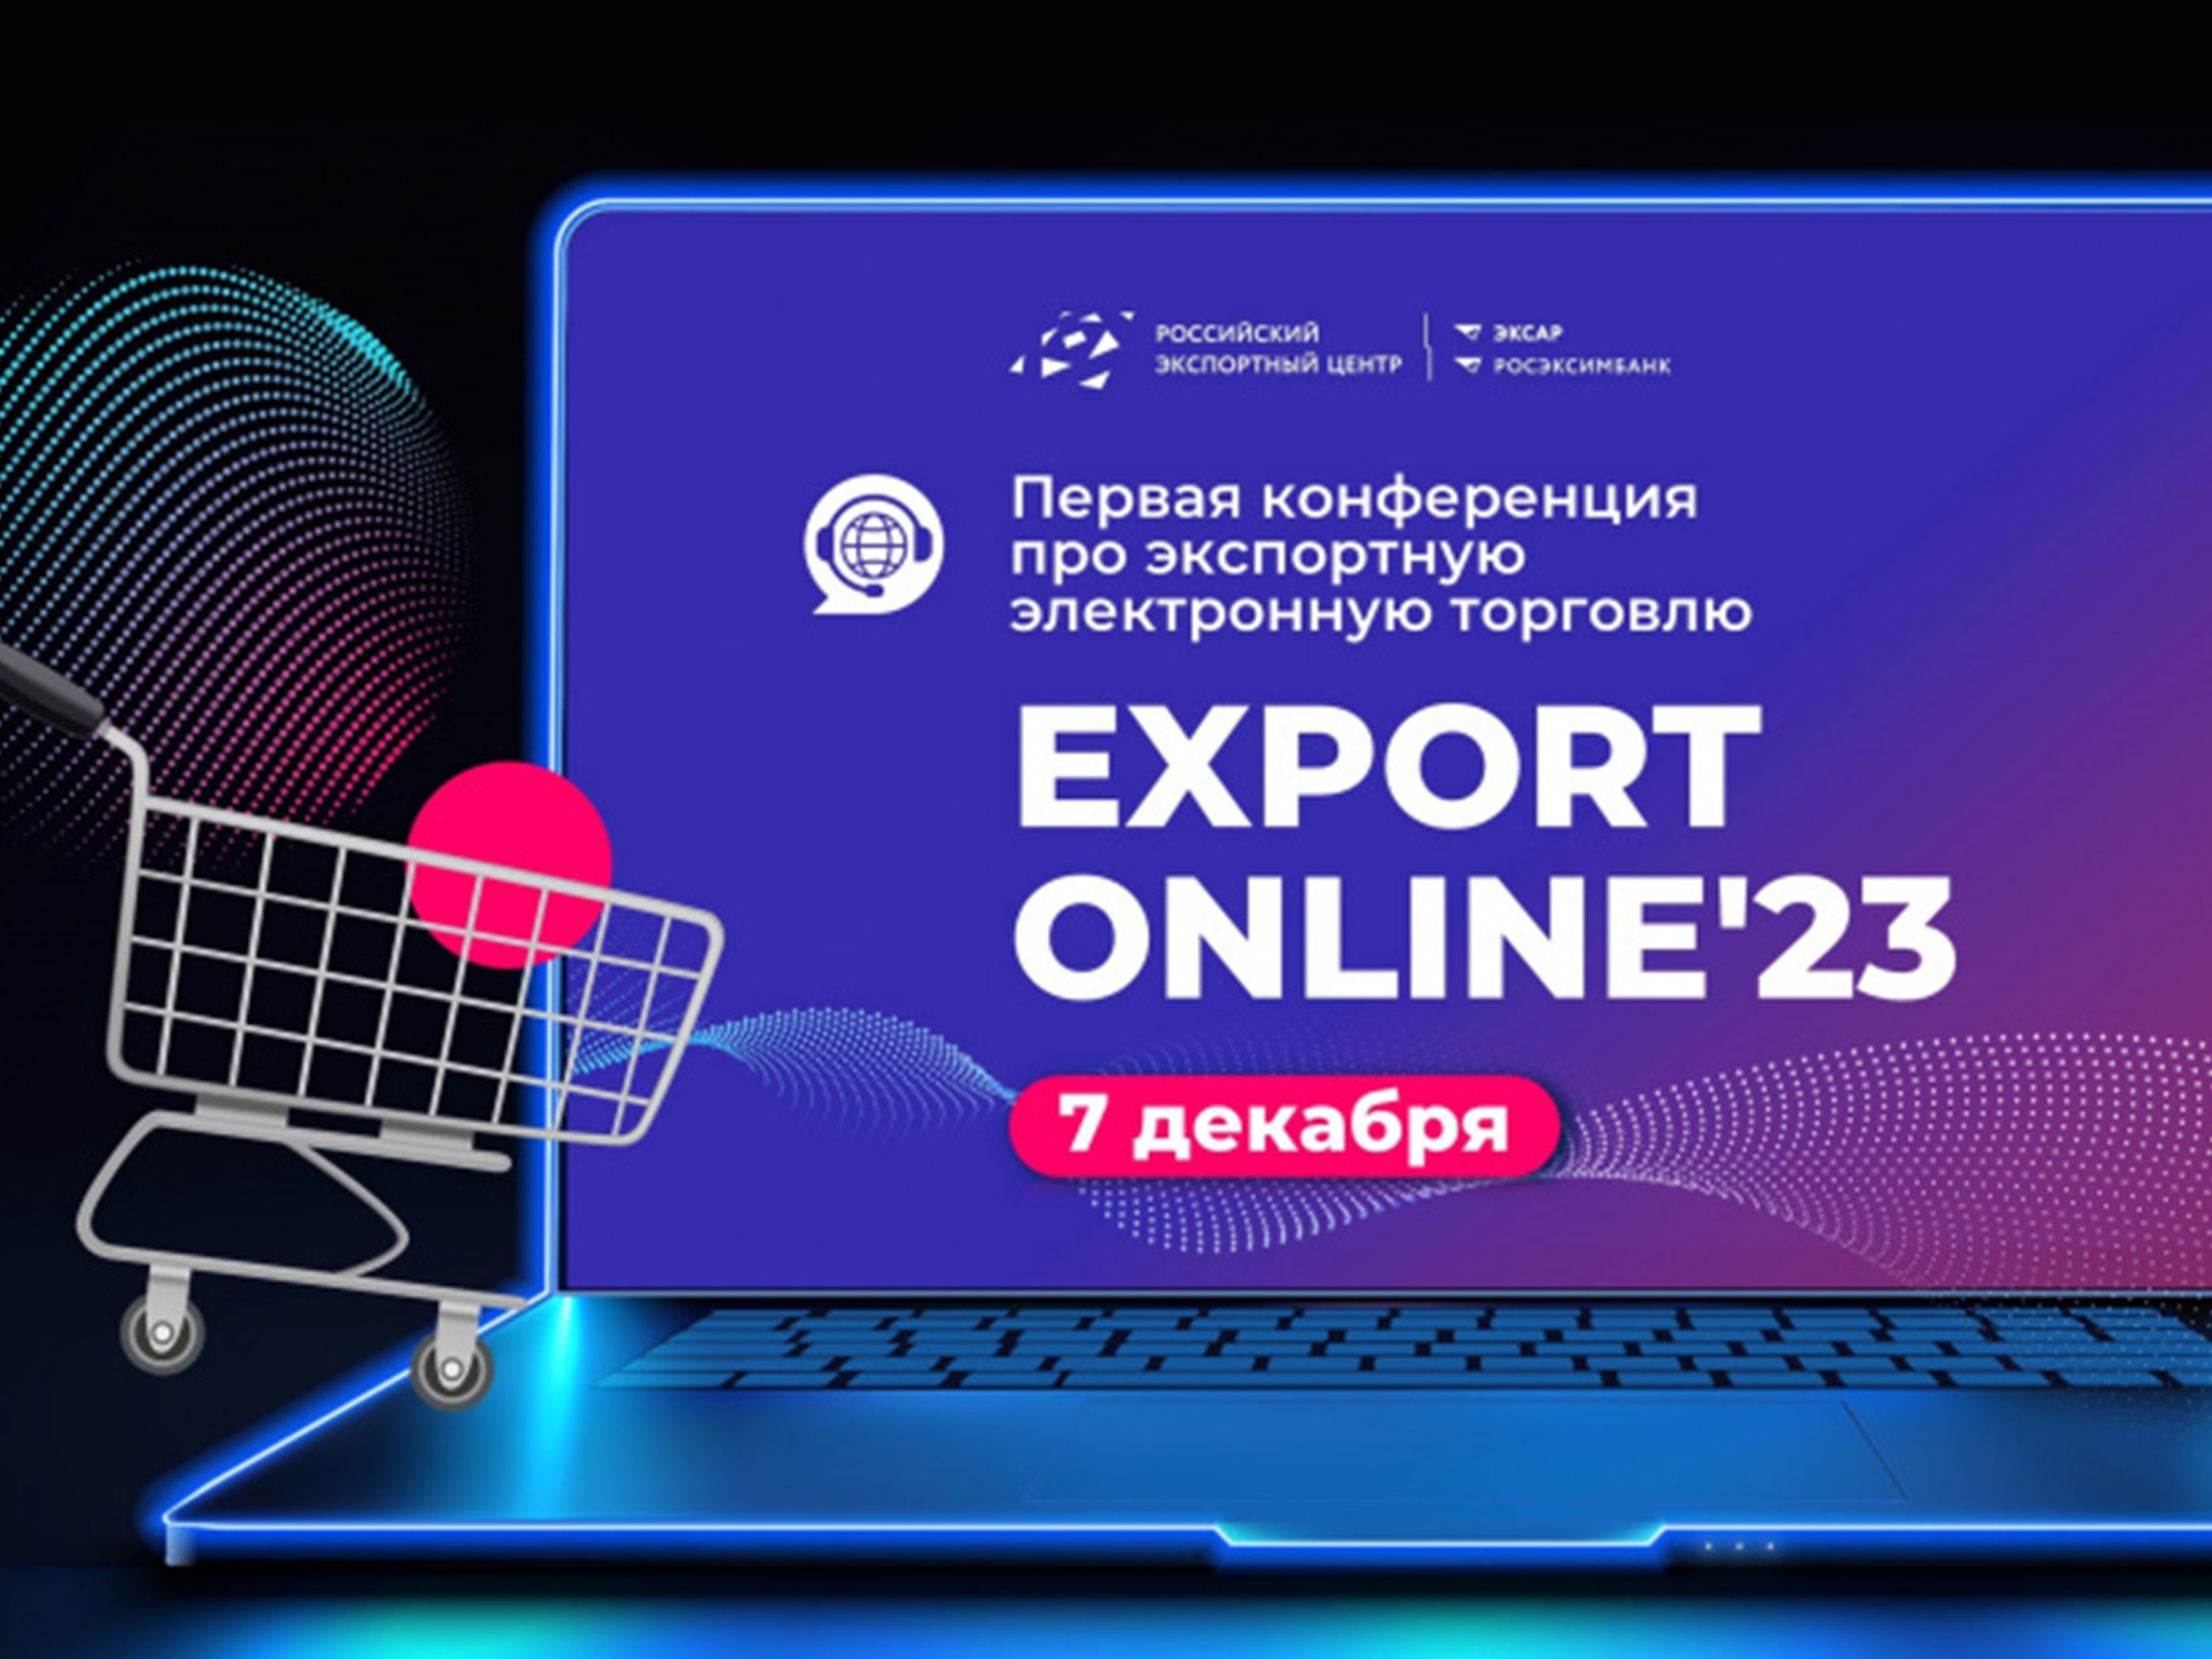 Онлайн-конференция по экспортной электронной торговле.